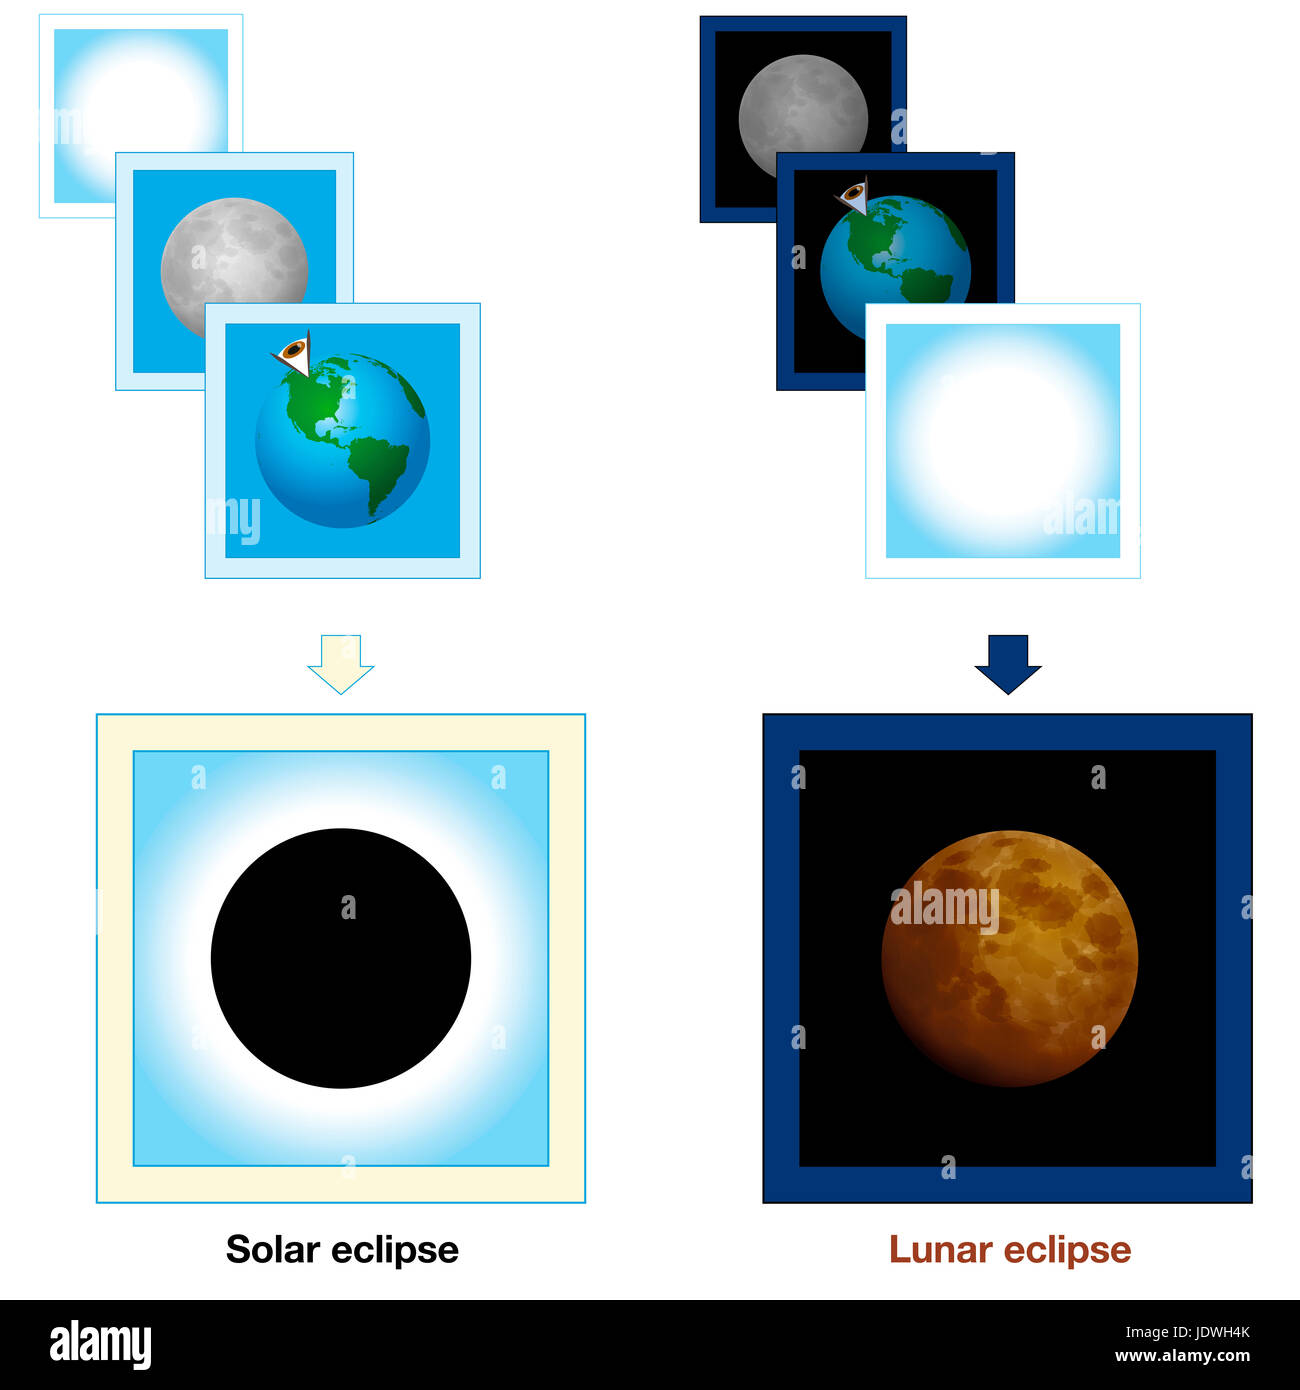 Eclissi solare, Lunar Eclipse, a confronto - presentazione semplice con carte dimostrando le diverse posizioni della terra, del sole e della luna. Foto Stock